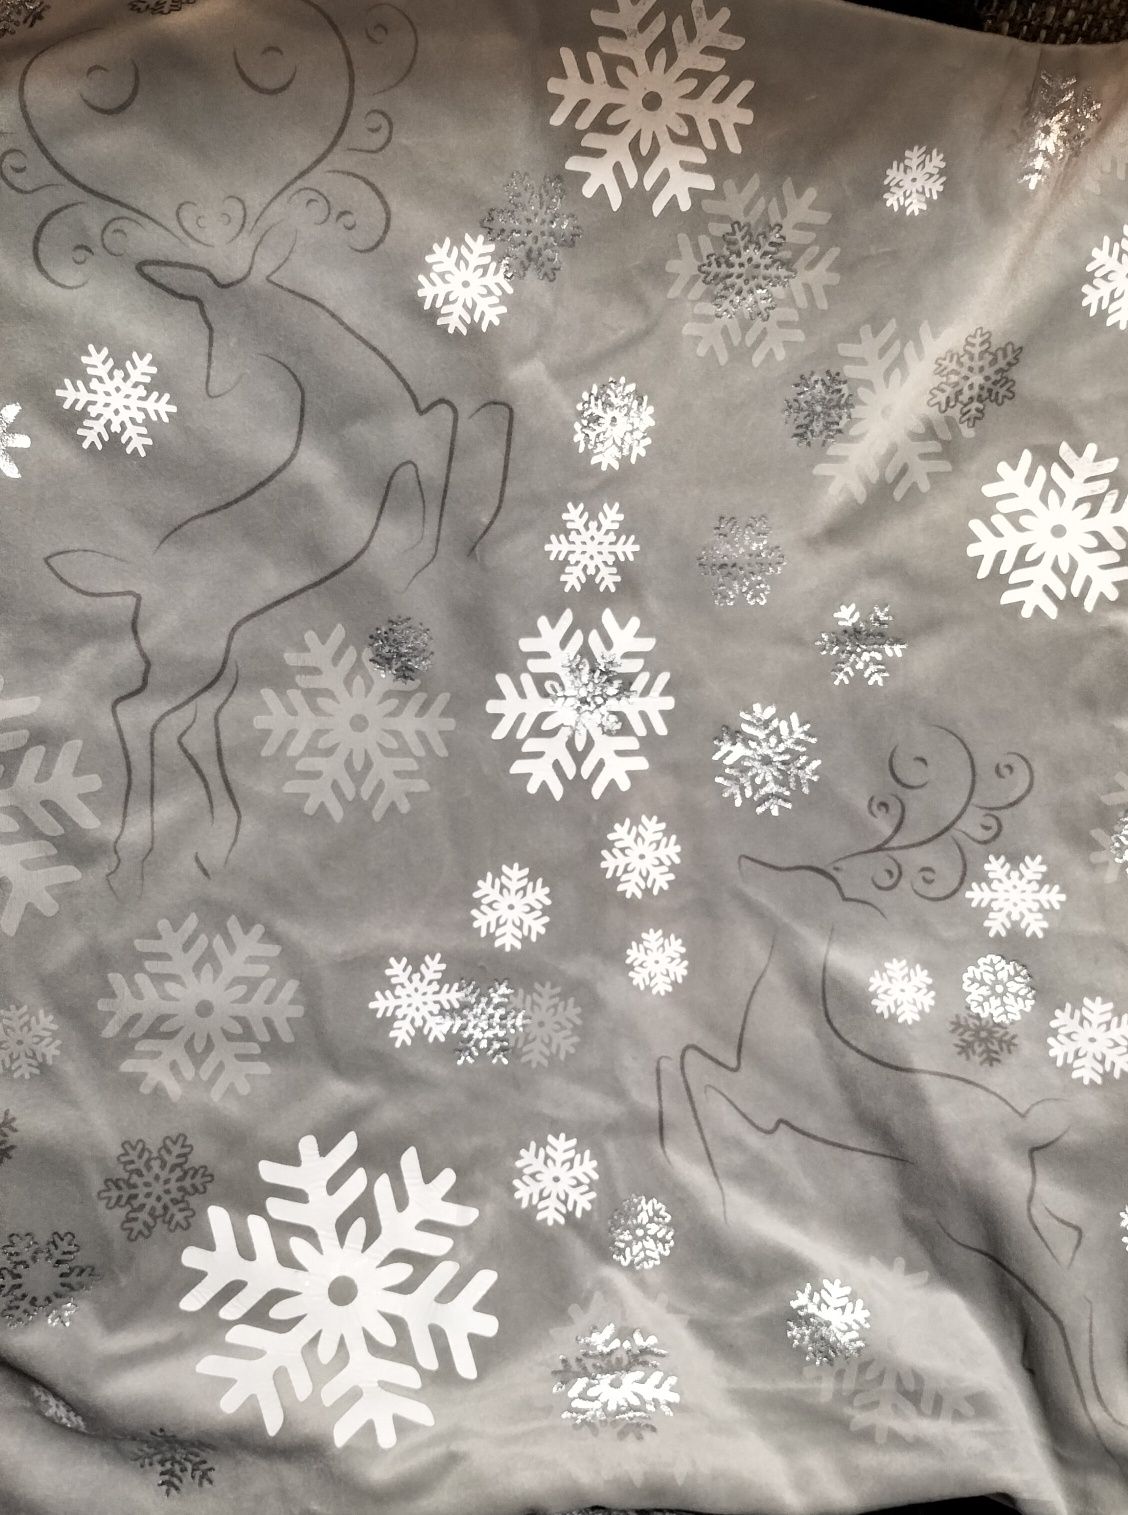 Poszewka świąteczns szara w śnieżynki i renifery,45x45